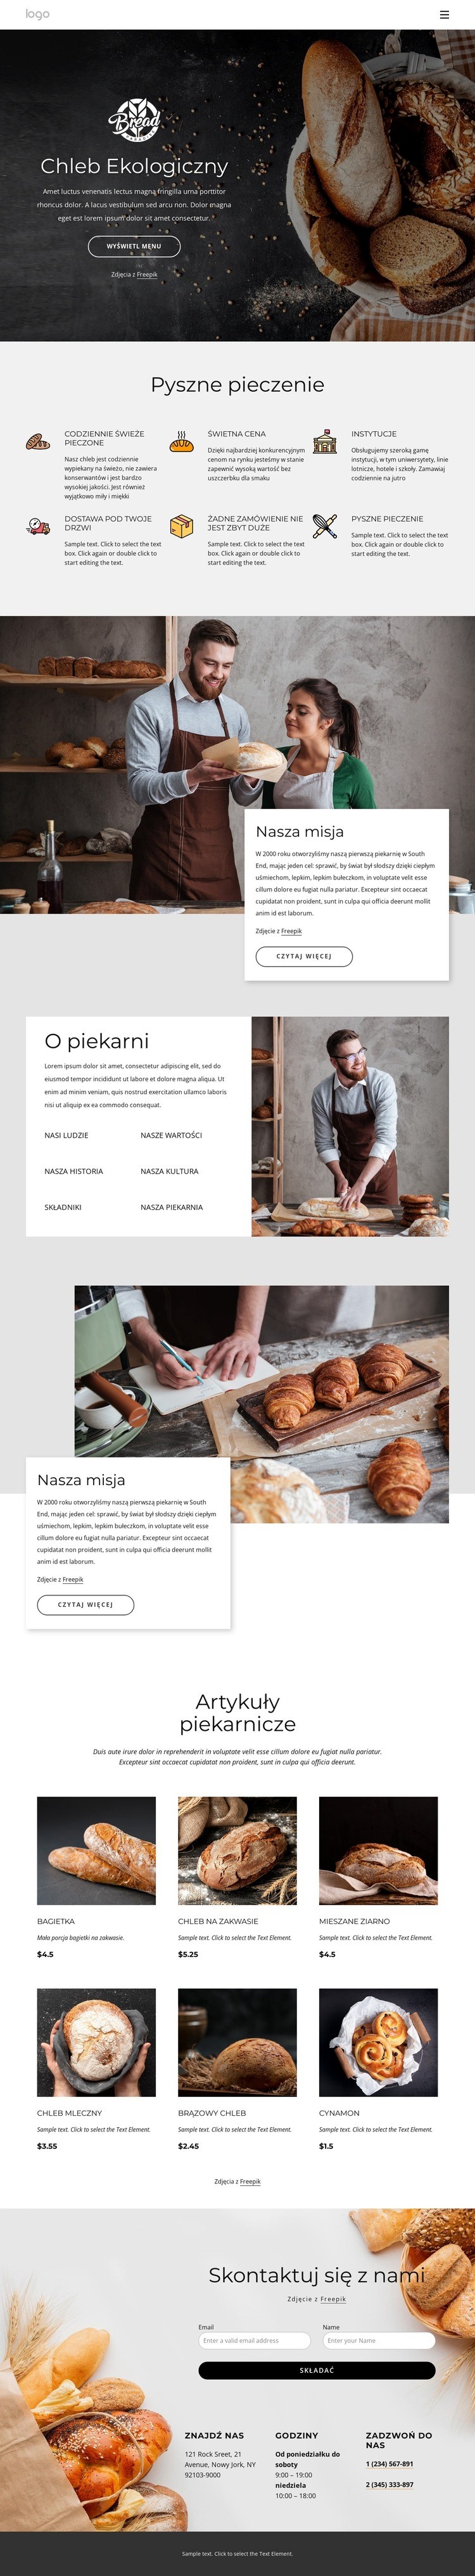 Bajgle, bułki, bułki, herbatniki i bochenki chleba Szablony do tworzenia witryn internetowych